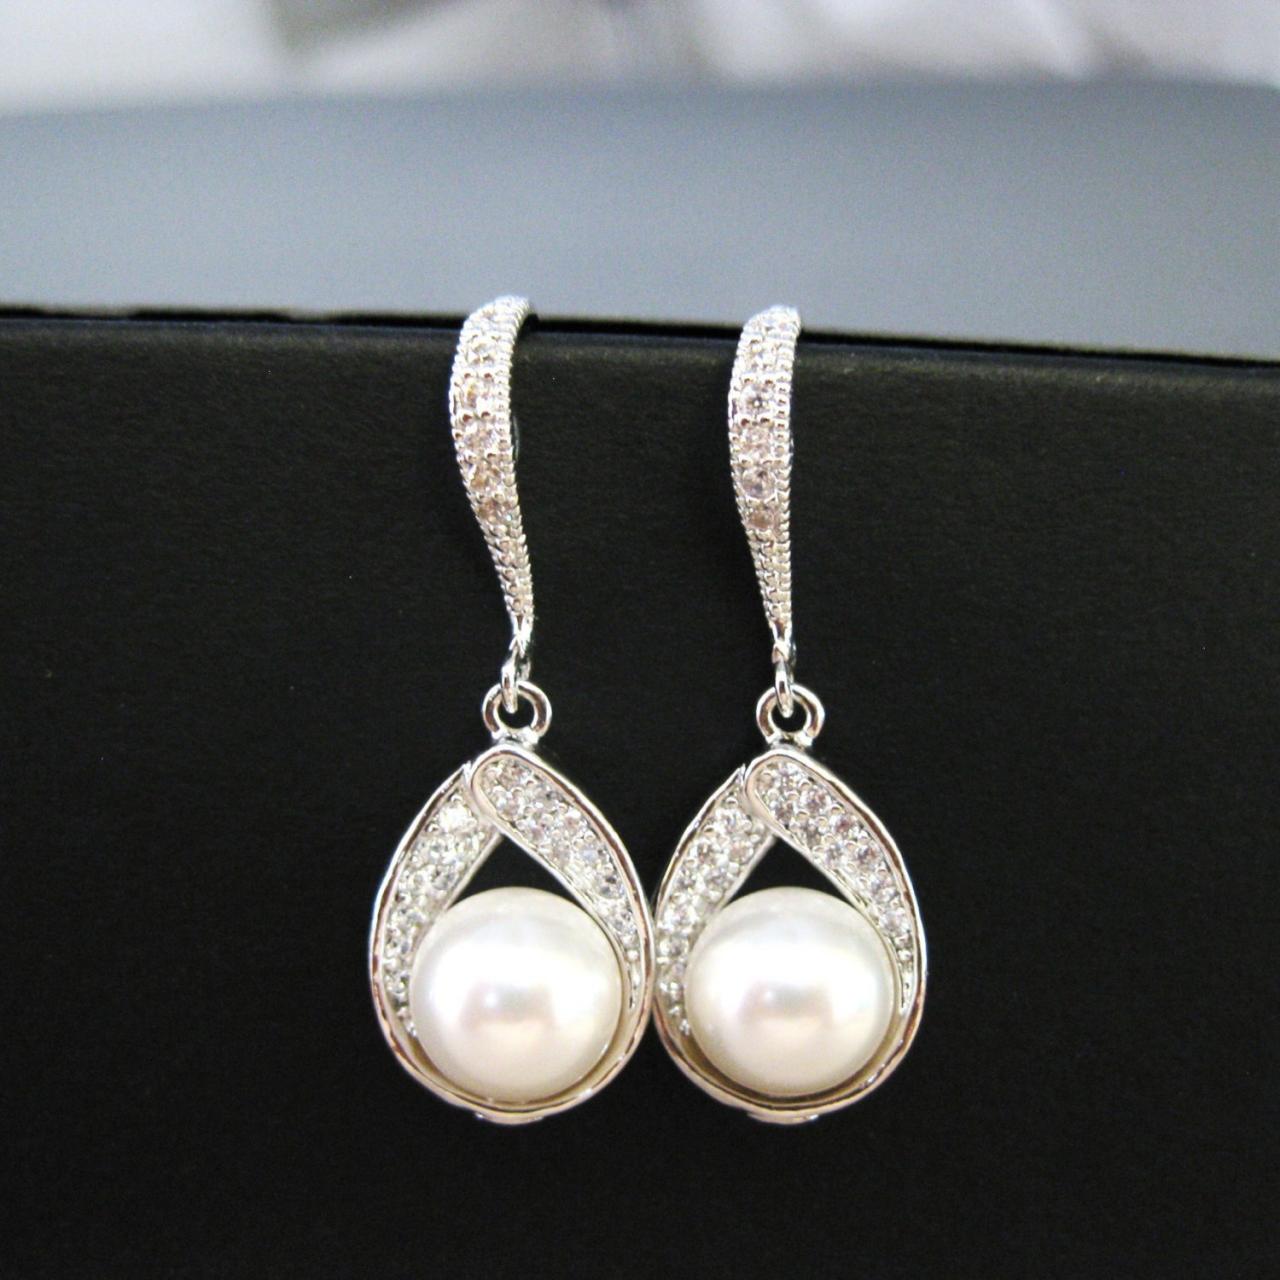 Bridal Pearl Earrings Wedding Jewelry Swarovski 8mm Pearl Cubic Zirconia Teardrop Earrings Drop Dangle Earrings Bridesmaid Gift (e017)